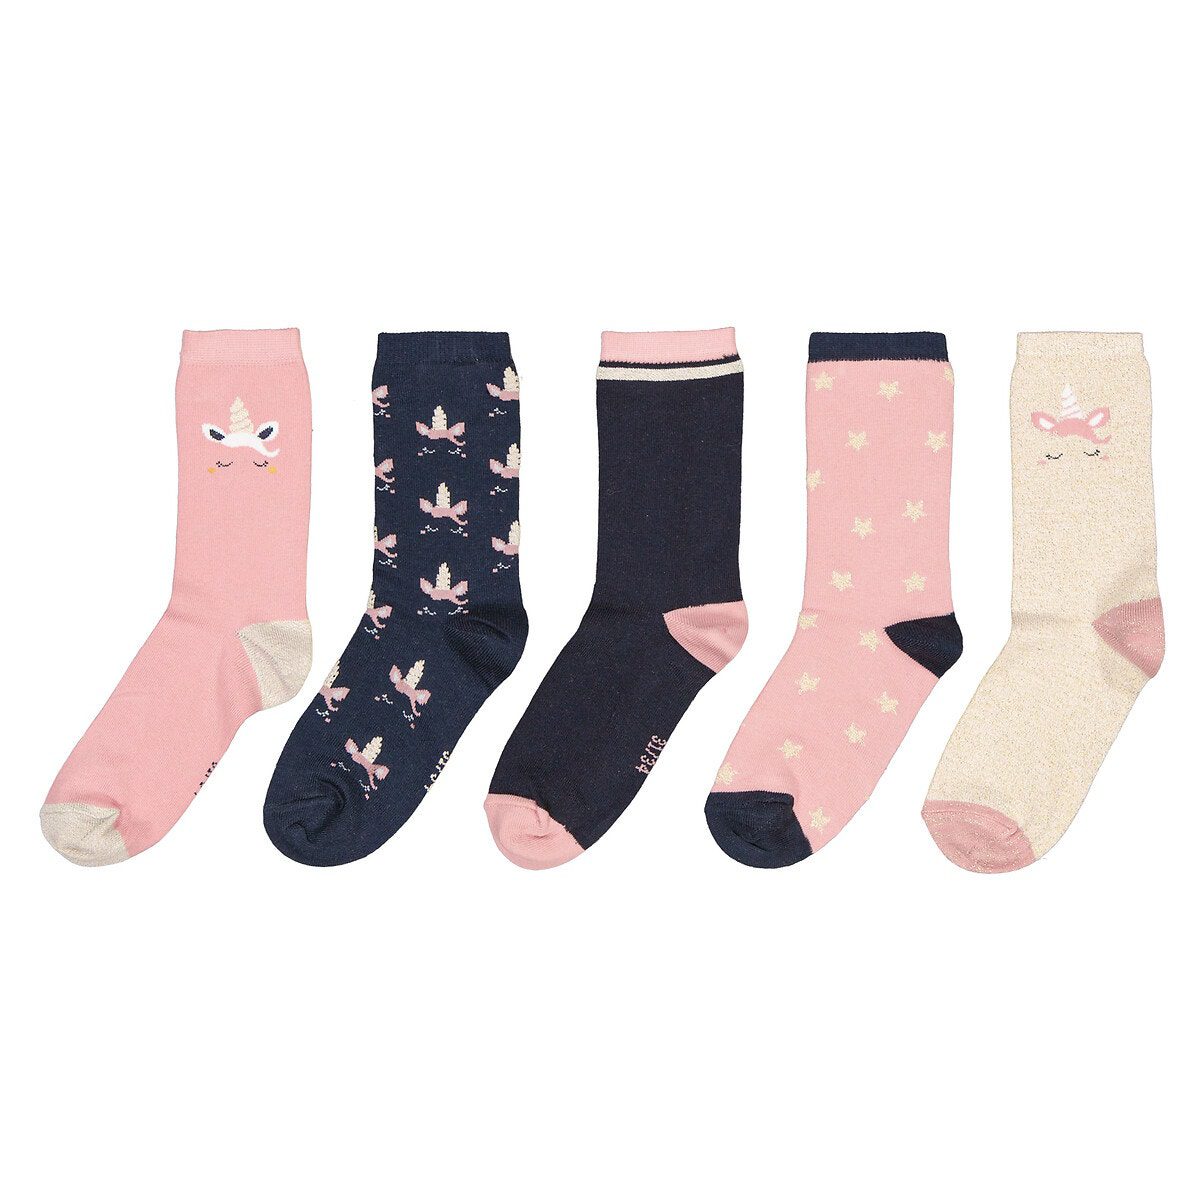 Σετ 5 ζευγάρια κάλτσες με σχέδιο μονόκερο Διαφορα Χρωματα